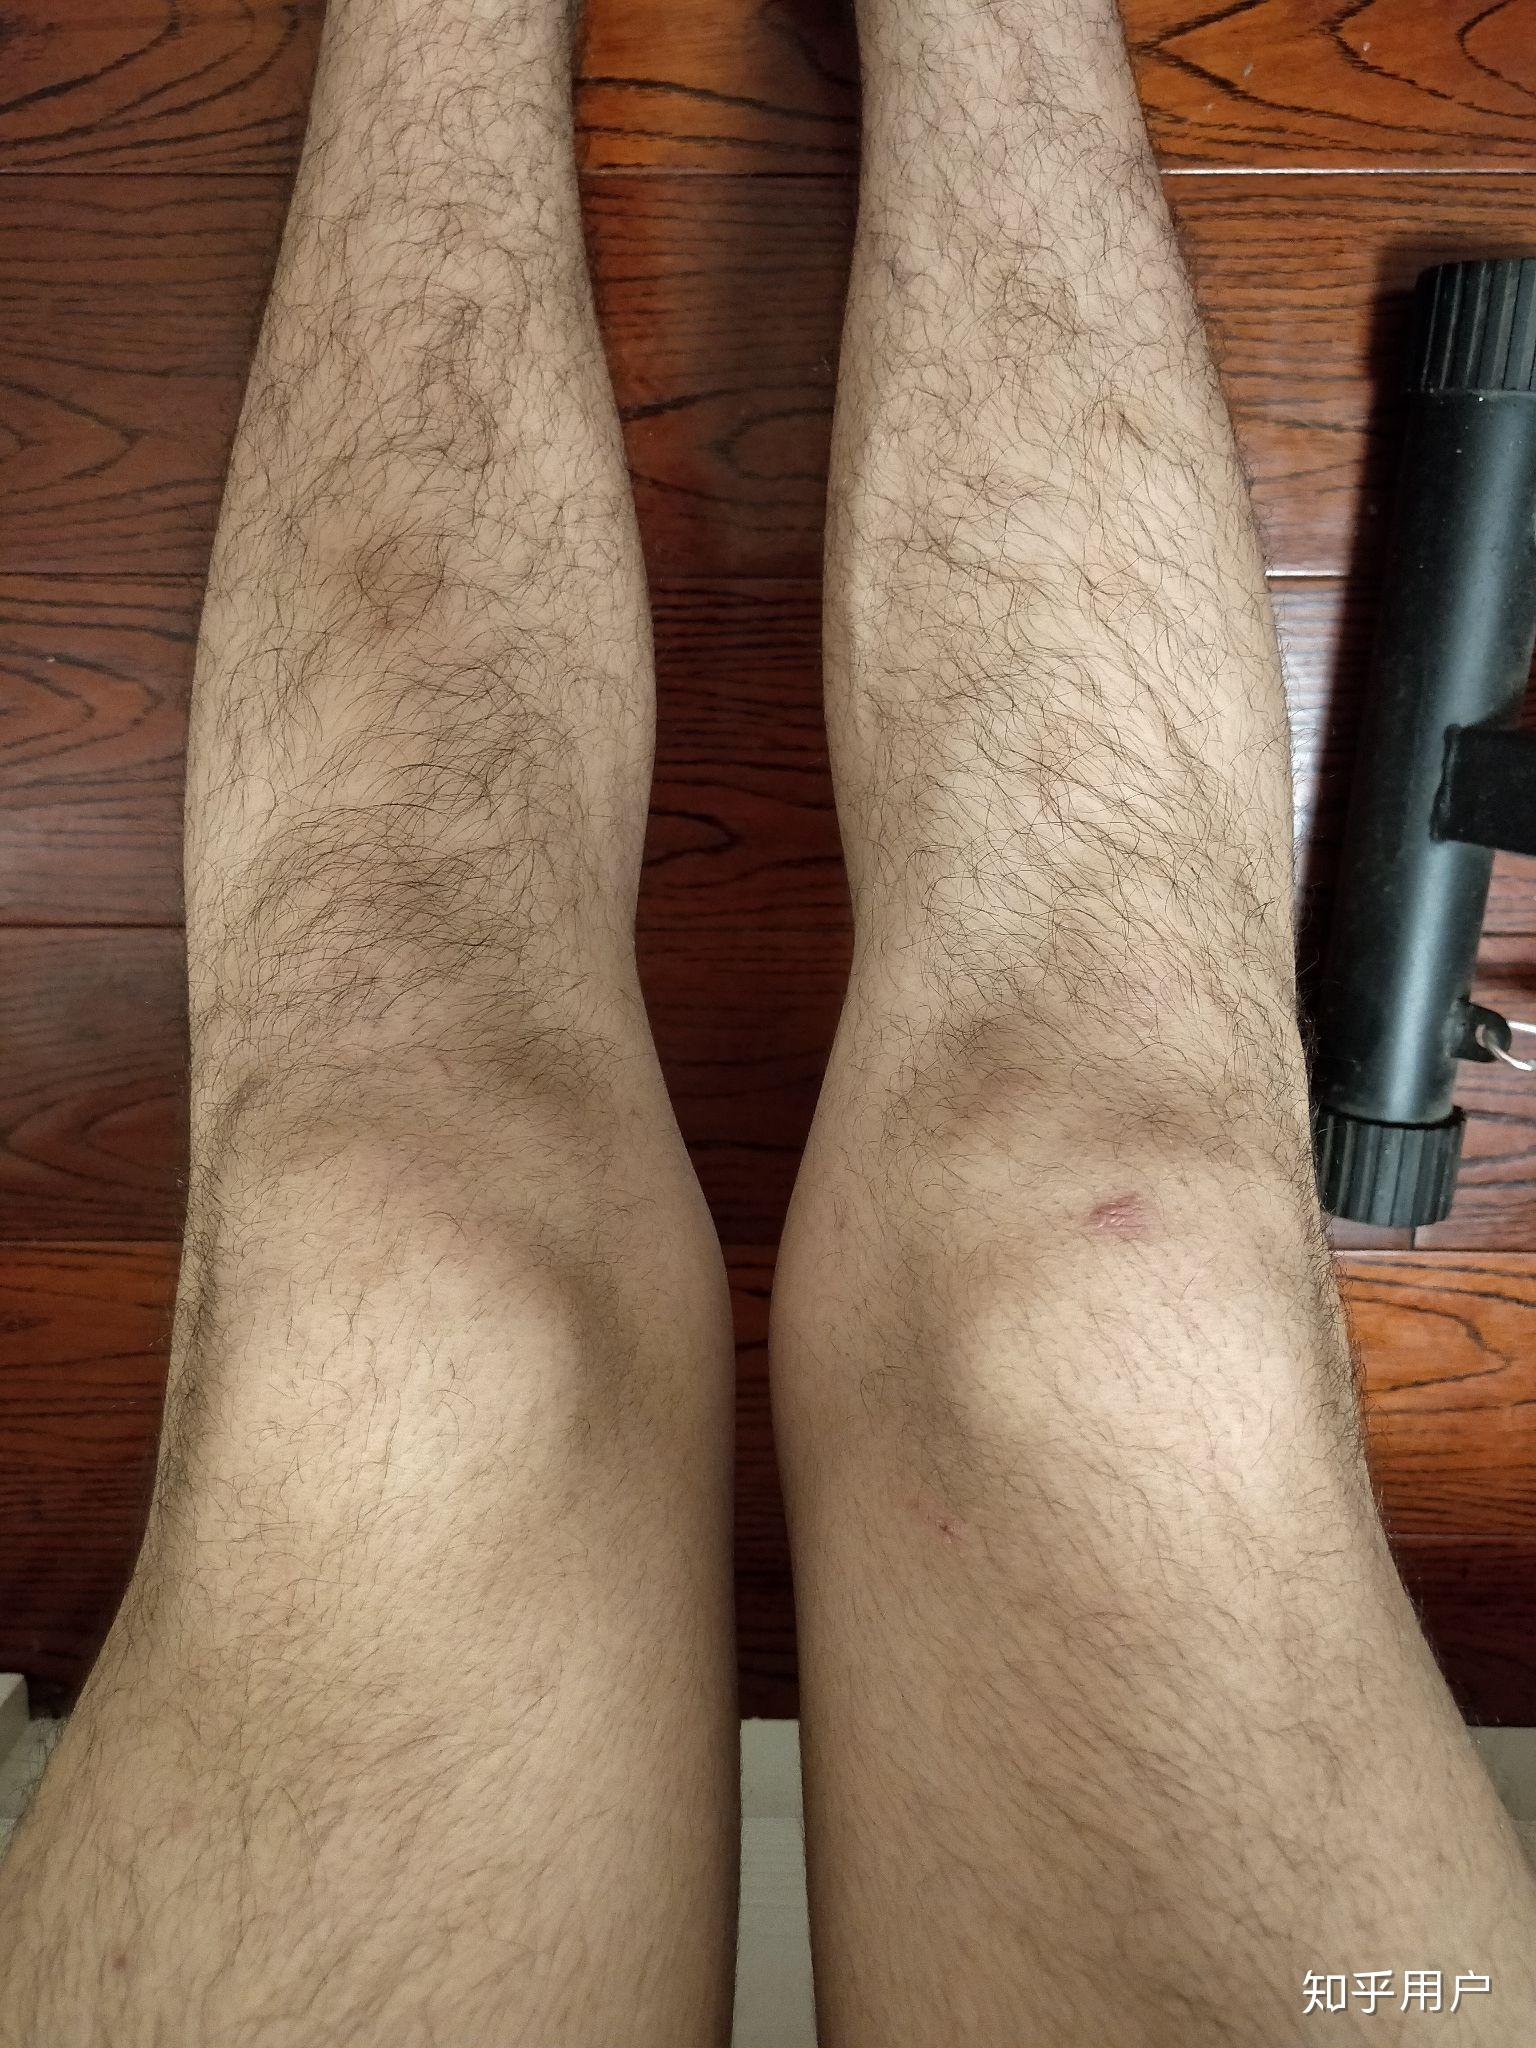 腿毛旺盛的男人图片